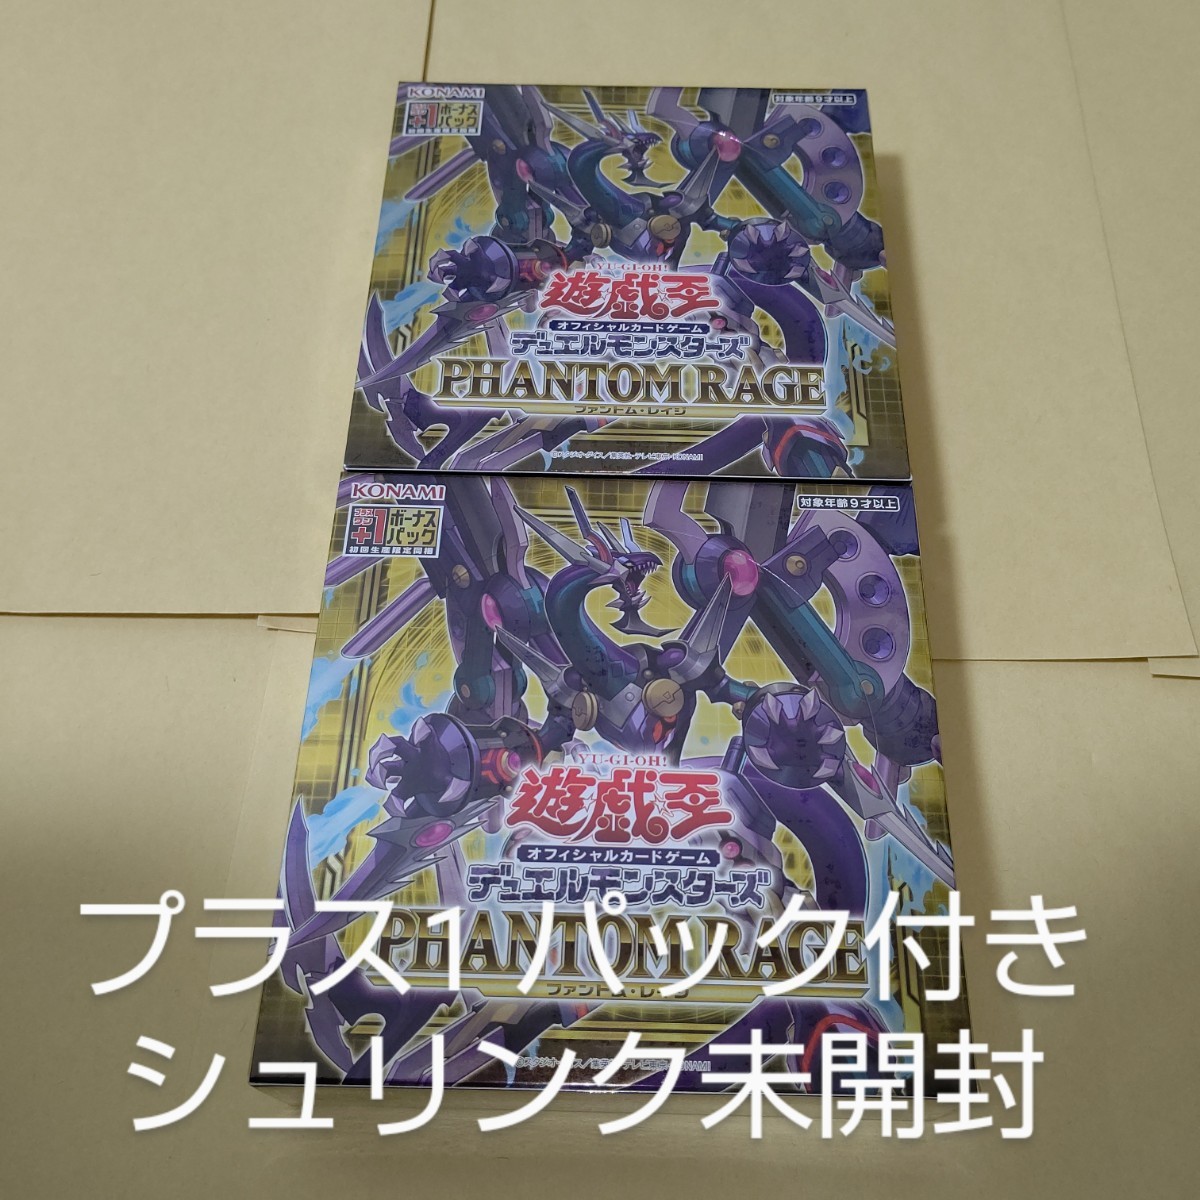 遊戯王 ファントムレイジ 2BOX (60パック入り) 新品未開封 PHANTOM